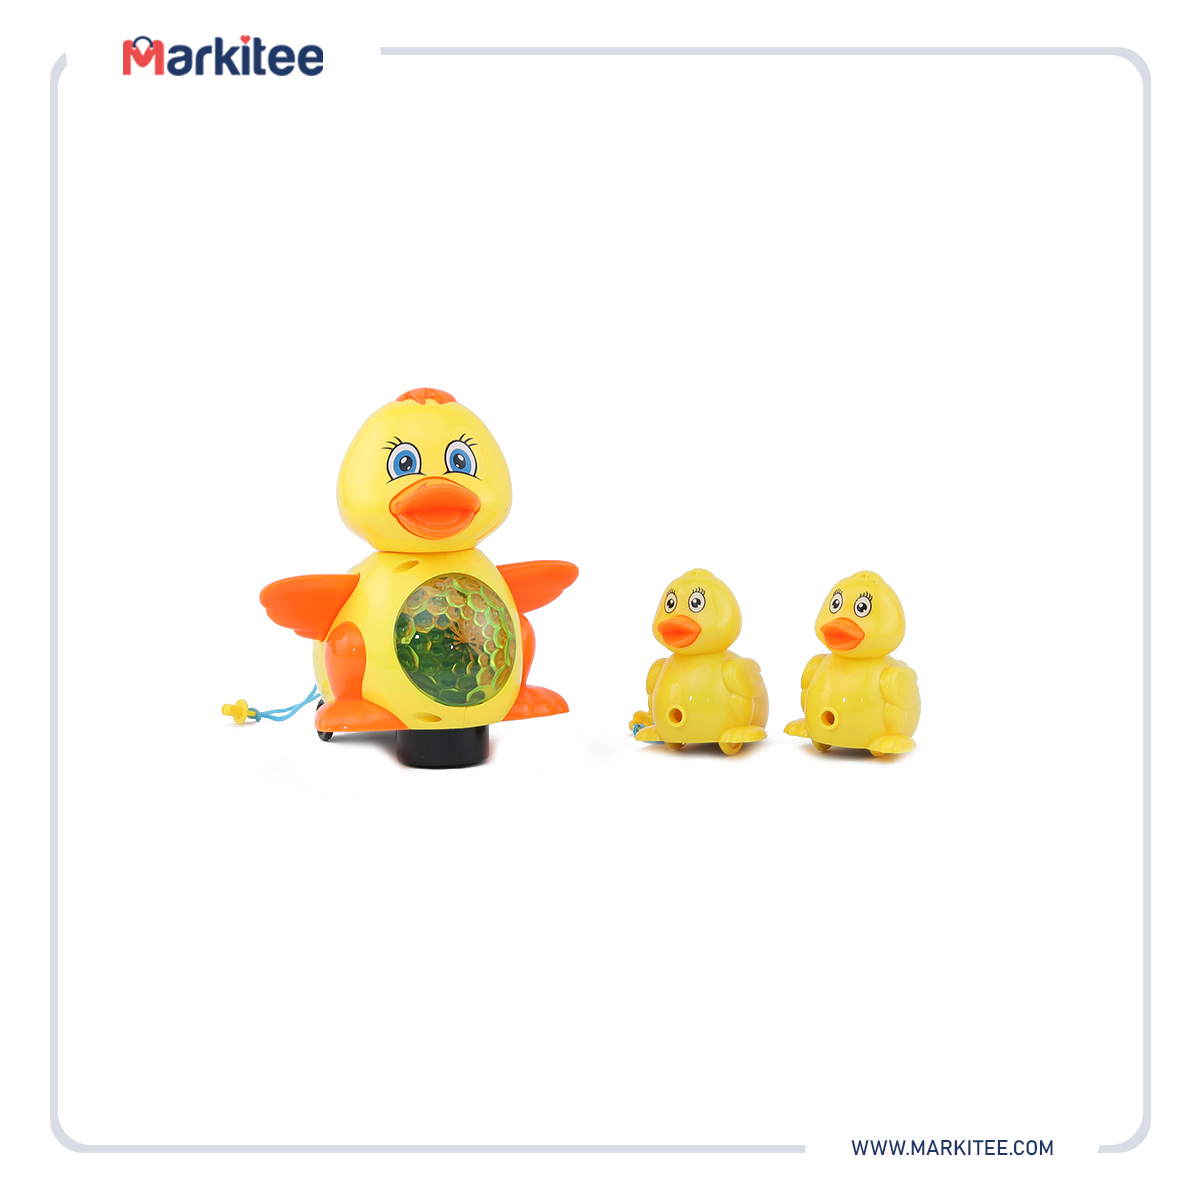 ماركيتي-markitee-20220601022559776_Markitee-Toys-Ty-556(4).jpg